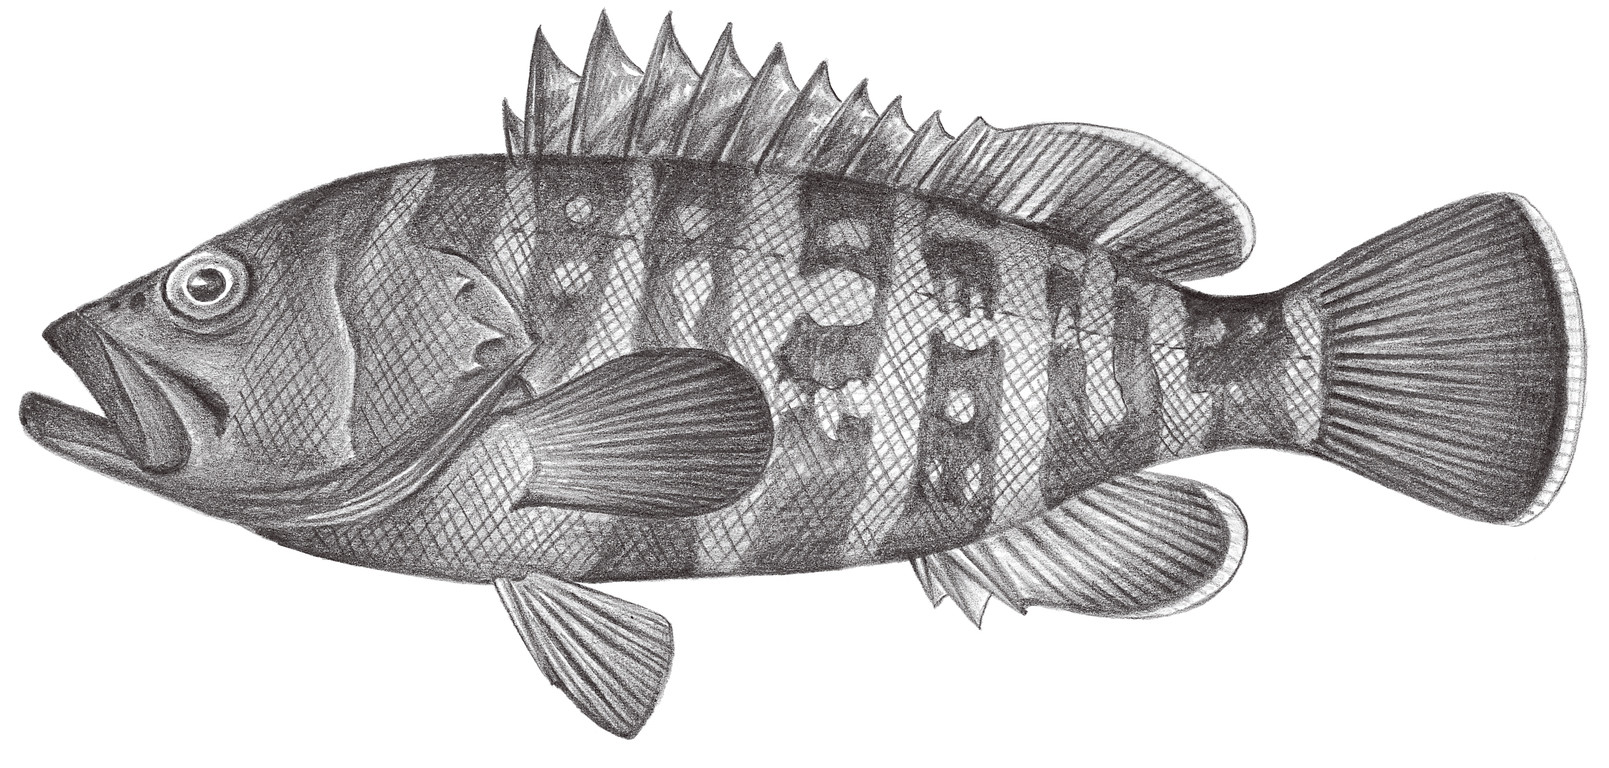 1045.	七帶石斑魚 Epinephelus septemfasciatus (Thunberg, 1793)